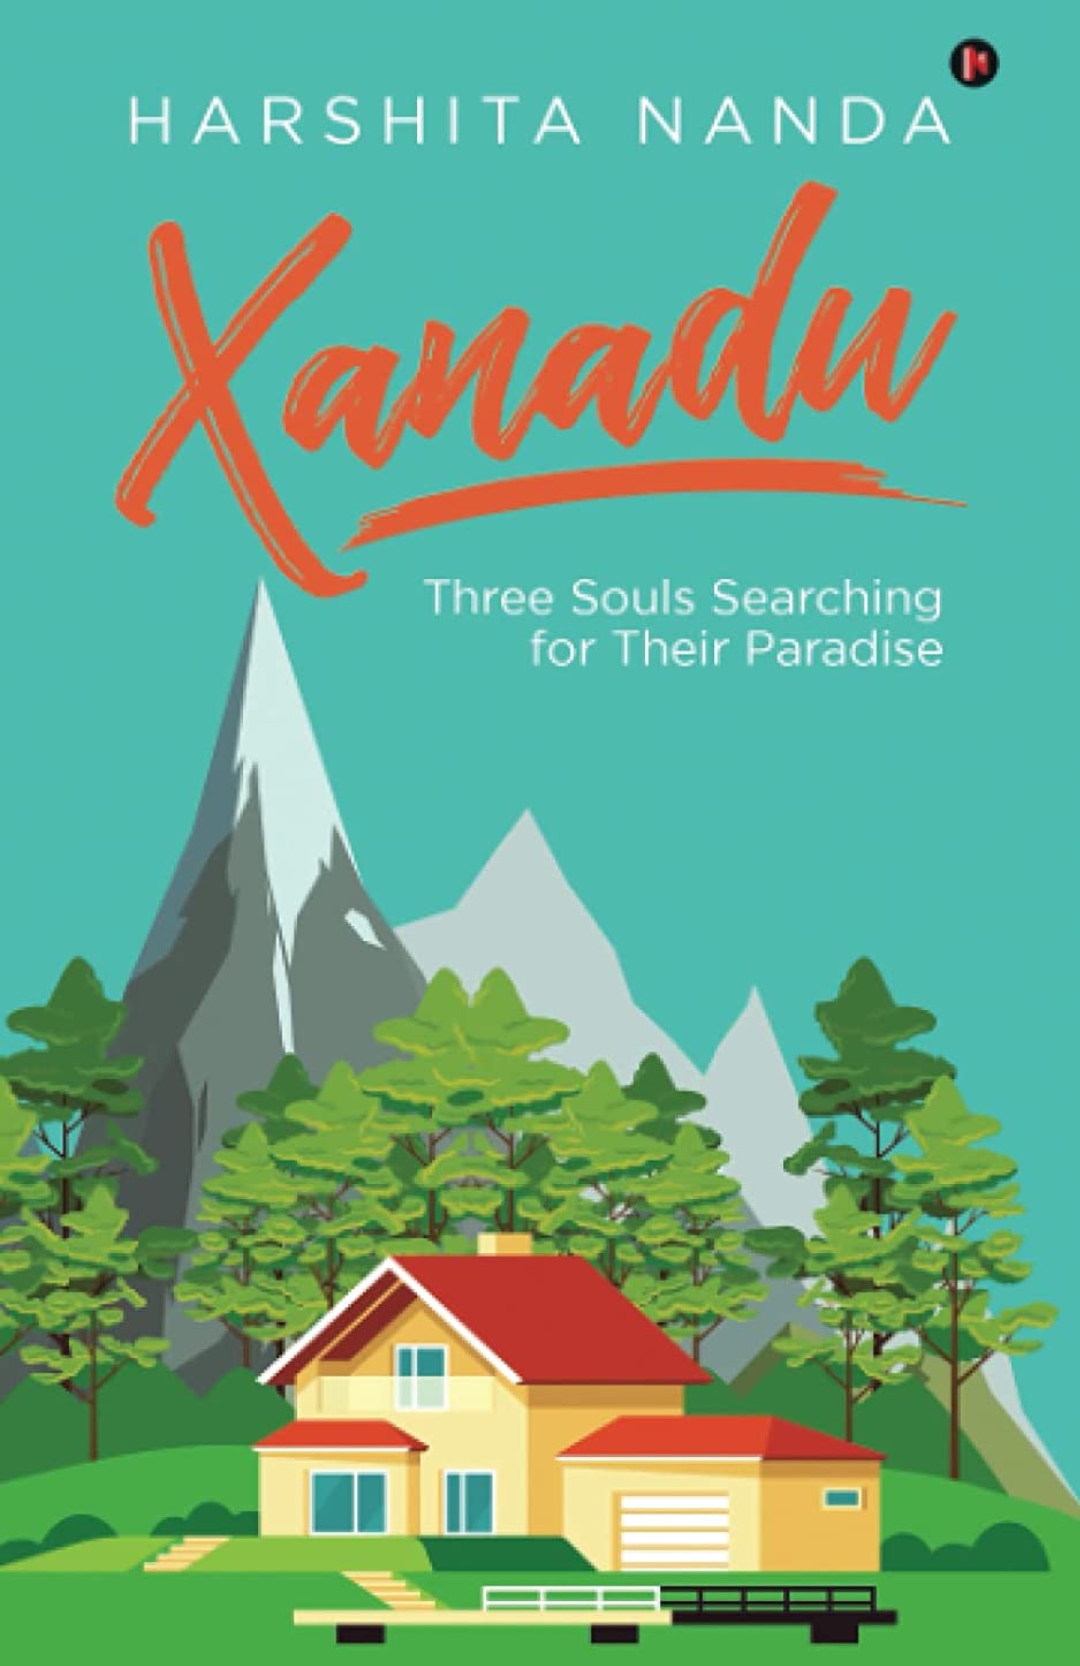 Xanadu – Three Souls Searching for their Paradise, by Harshita Nanda